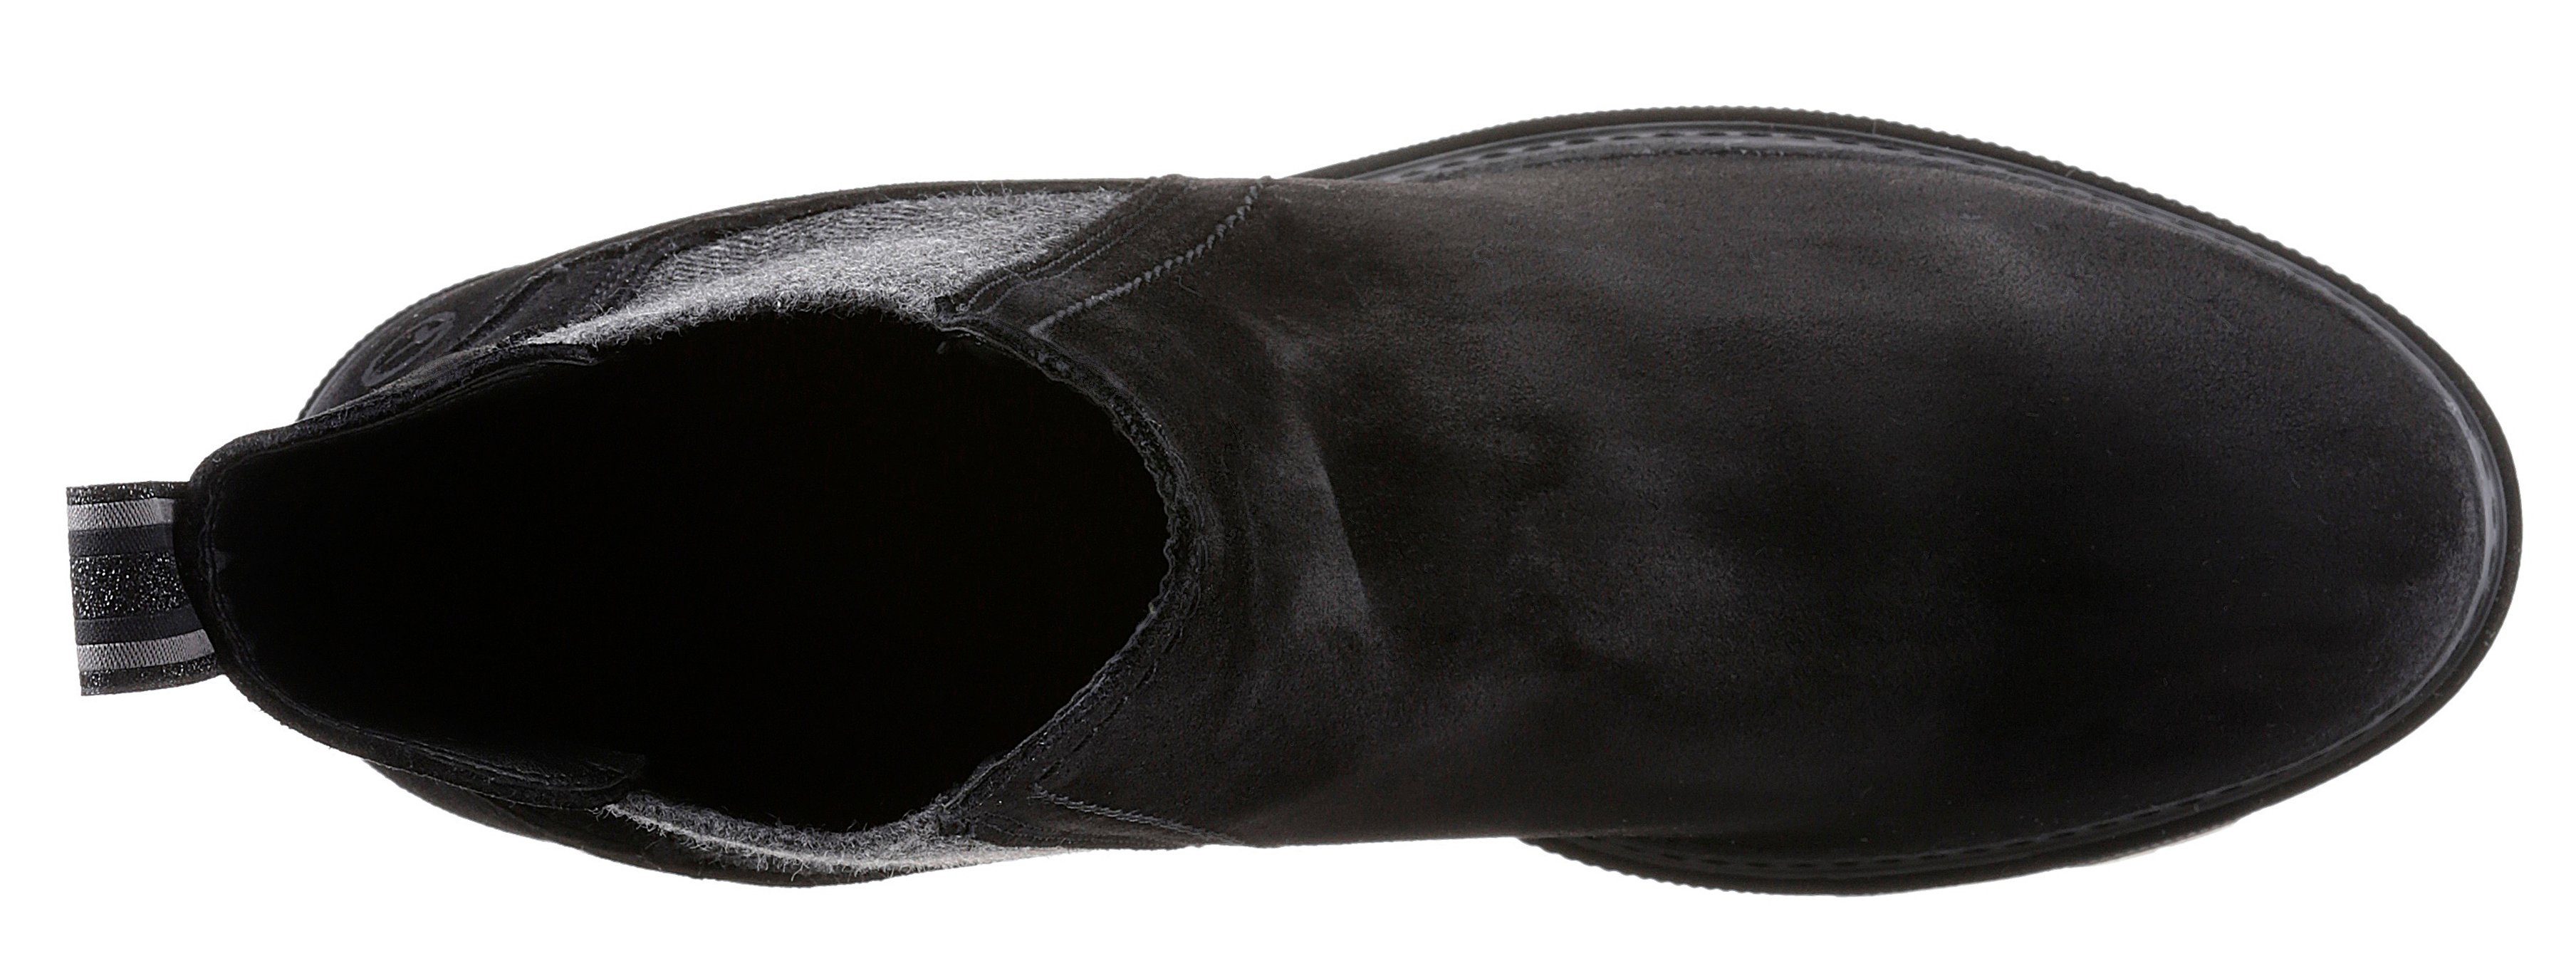 Tamaris Panna Stiefelette mit trendigen Streifenbesatz schwarz